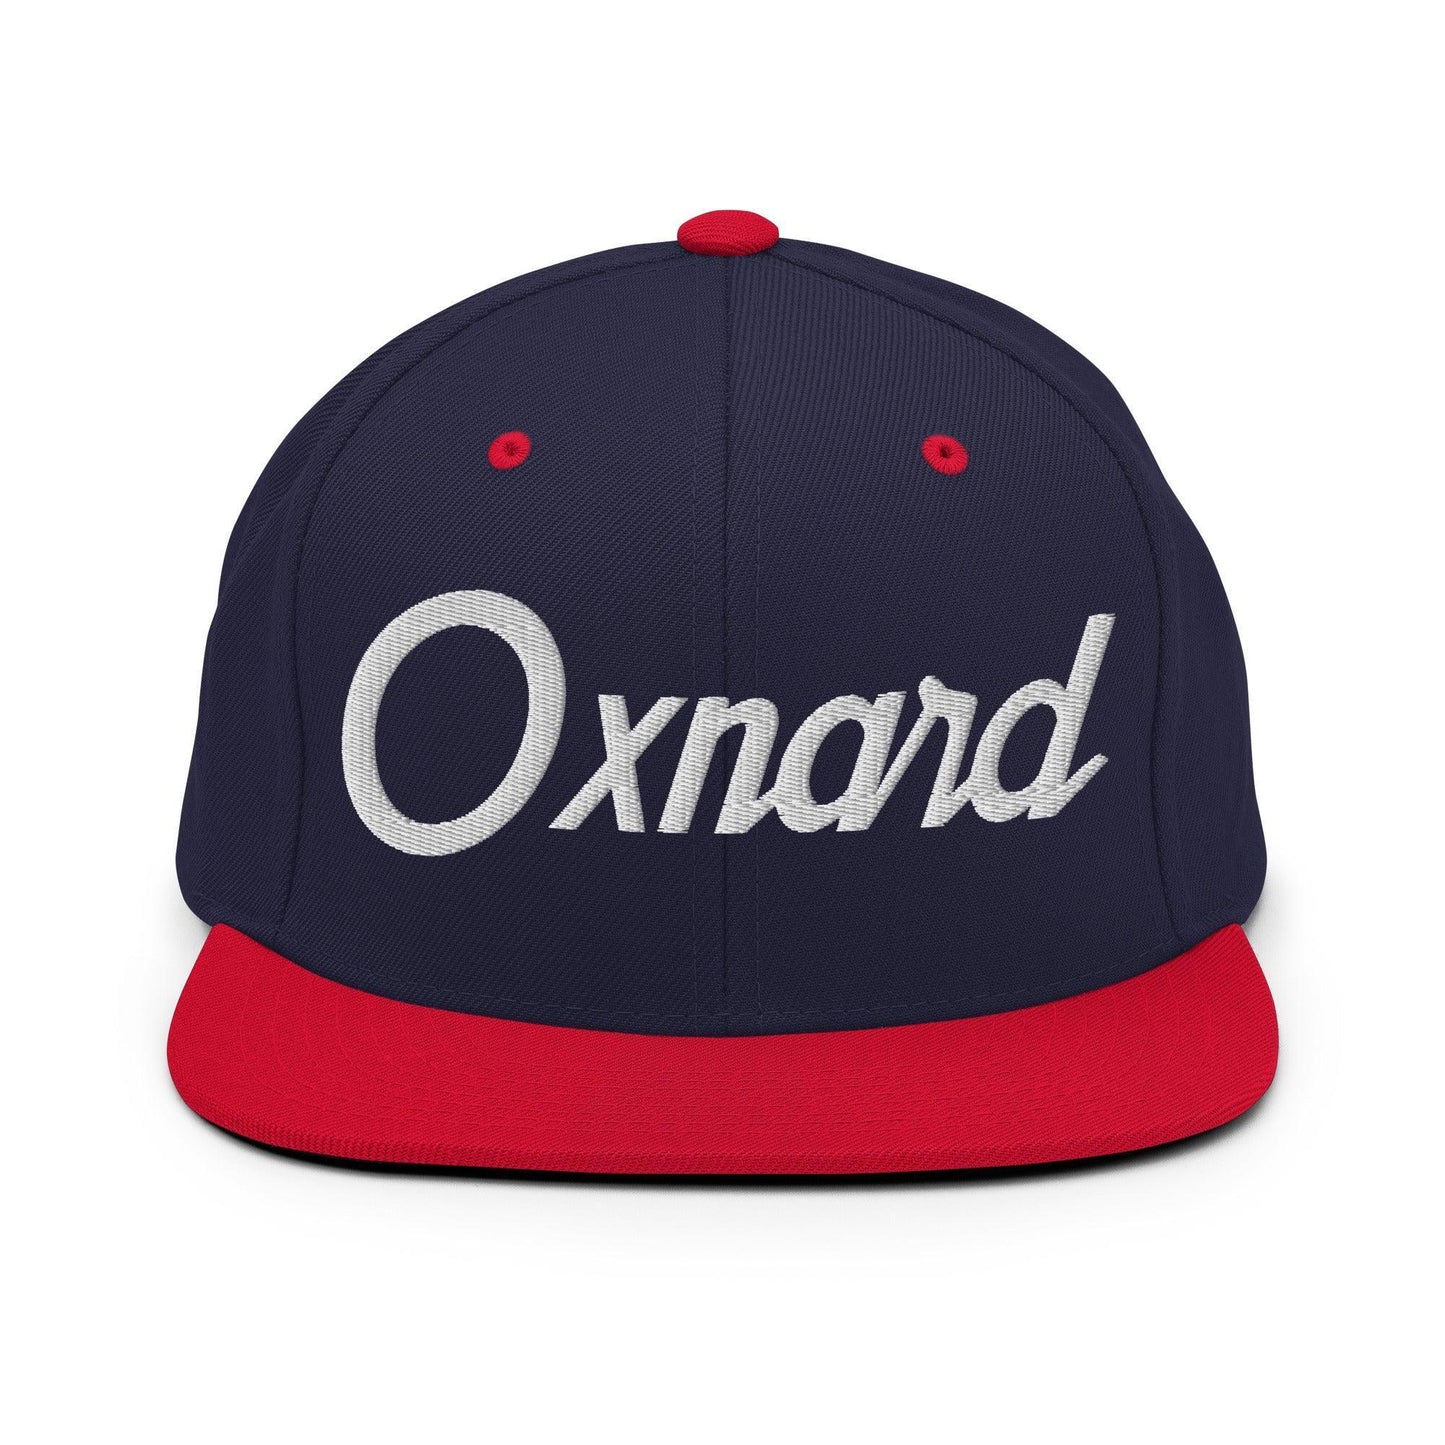 Oxnard Script Snapback Hat Navy/ Red